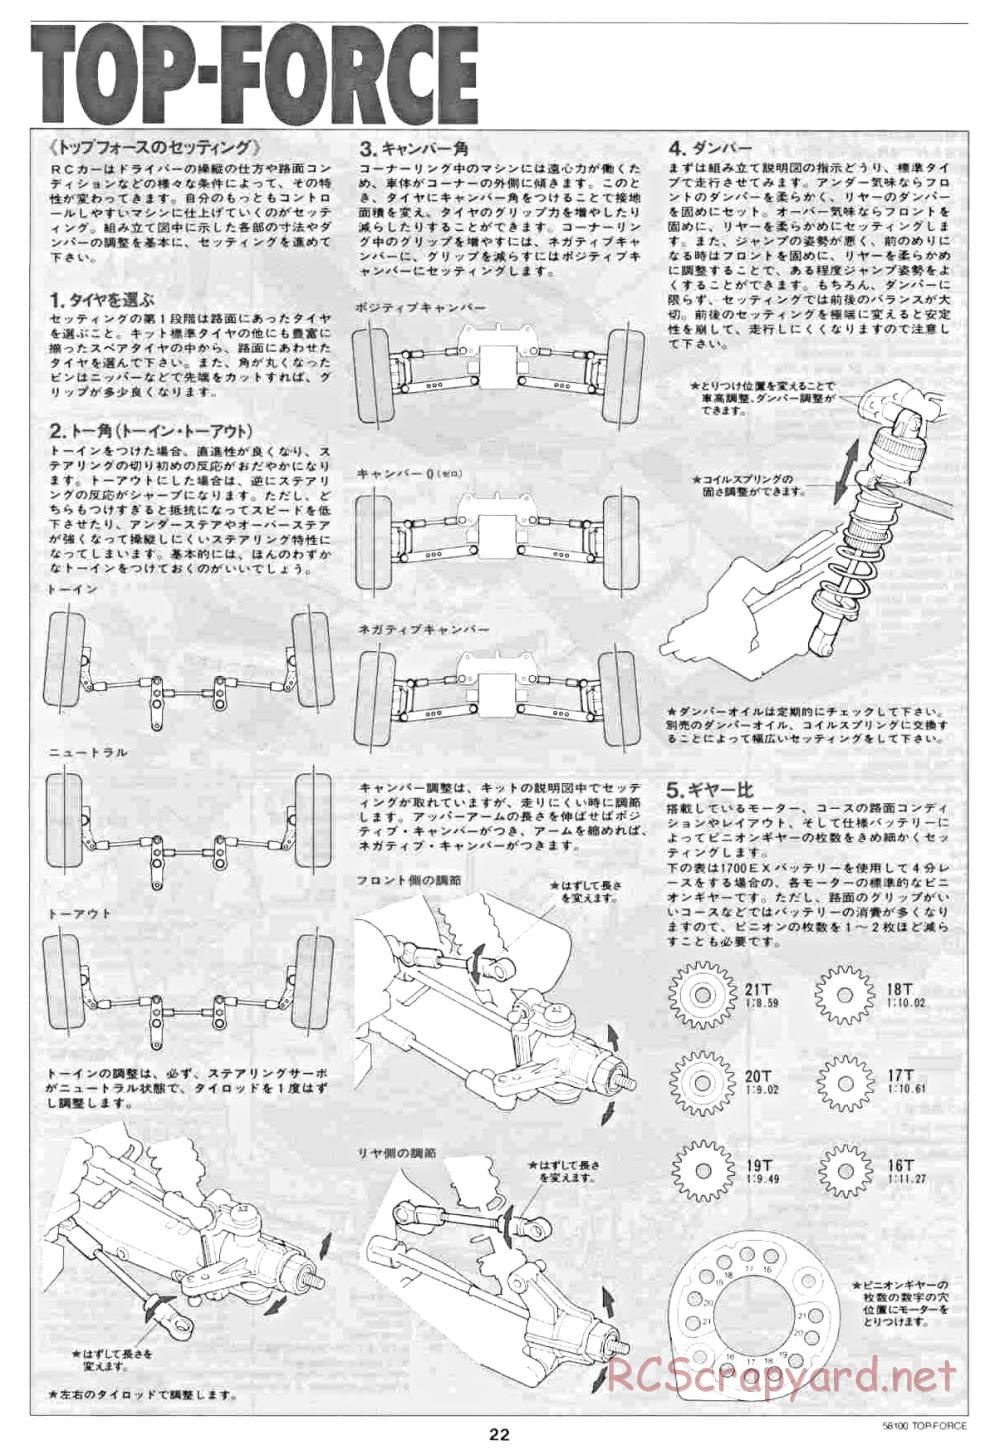 Tamiya - Top Force - 58100 - Manual - Page 22